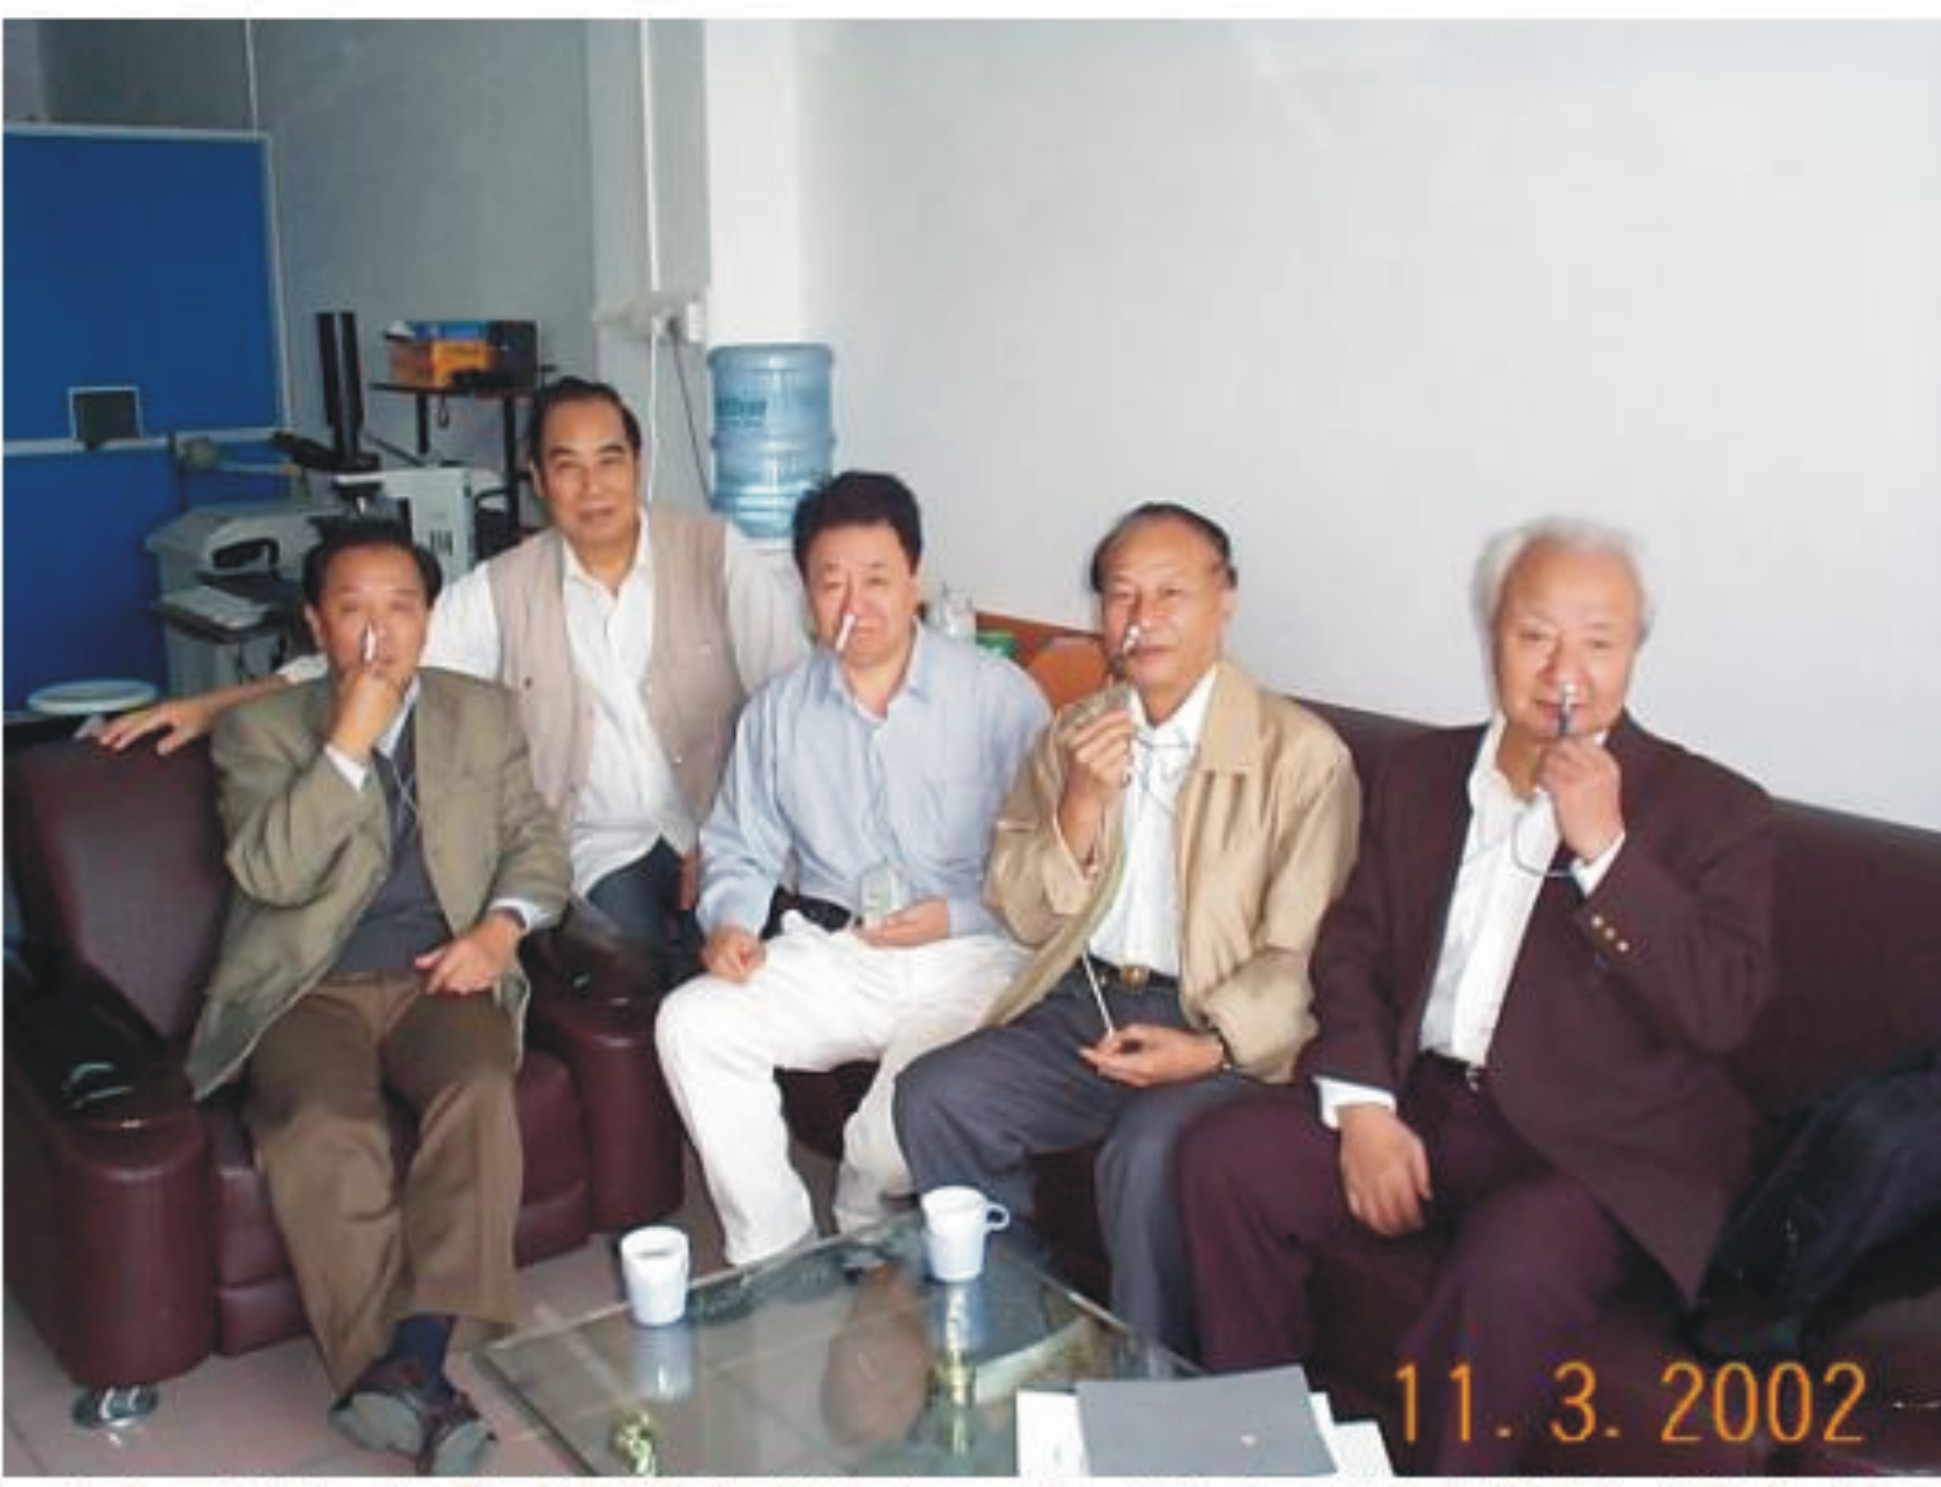 叔祥教授（左一）杨子彬教授（右一）与岑烈芳教授（左二）合影留念。